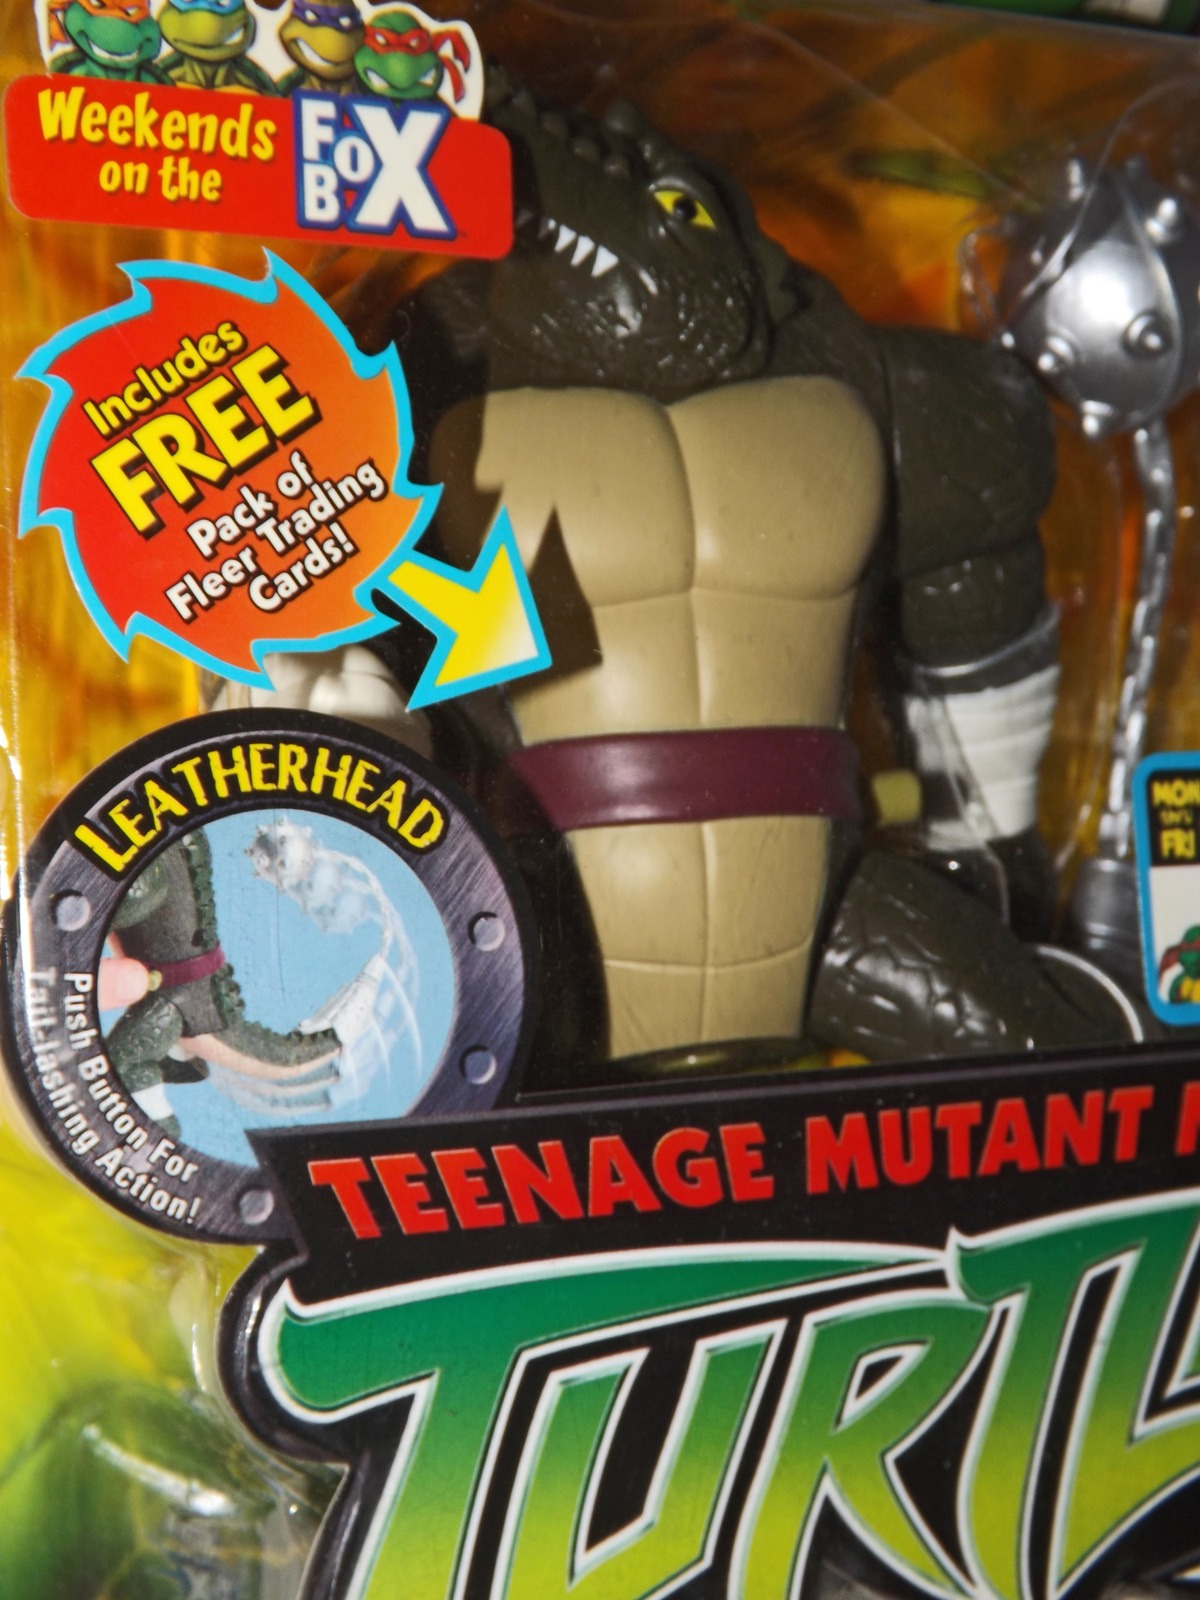 2004 Leatherhead Action Figure, Teenage Mutant Ninja Turtles, Playmates - $99.95